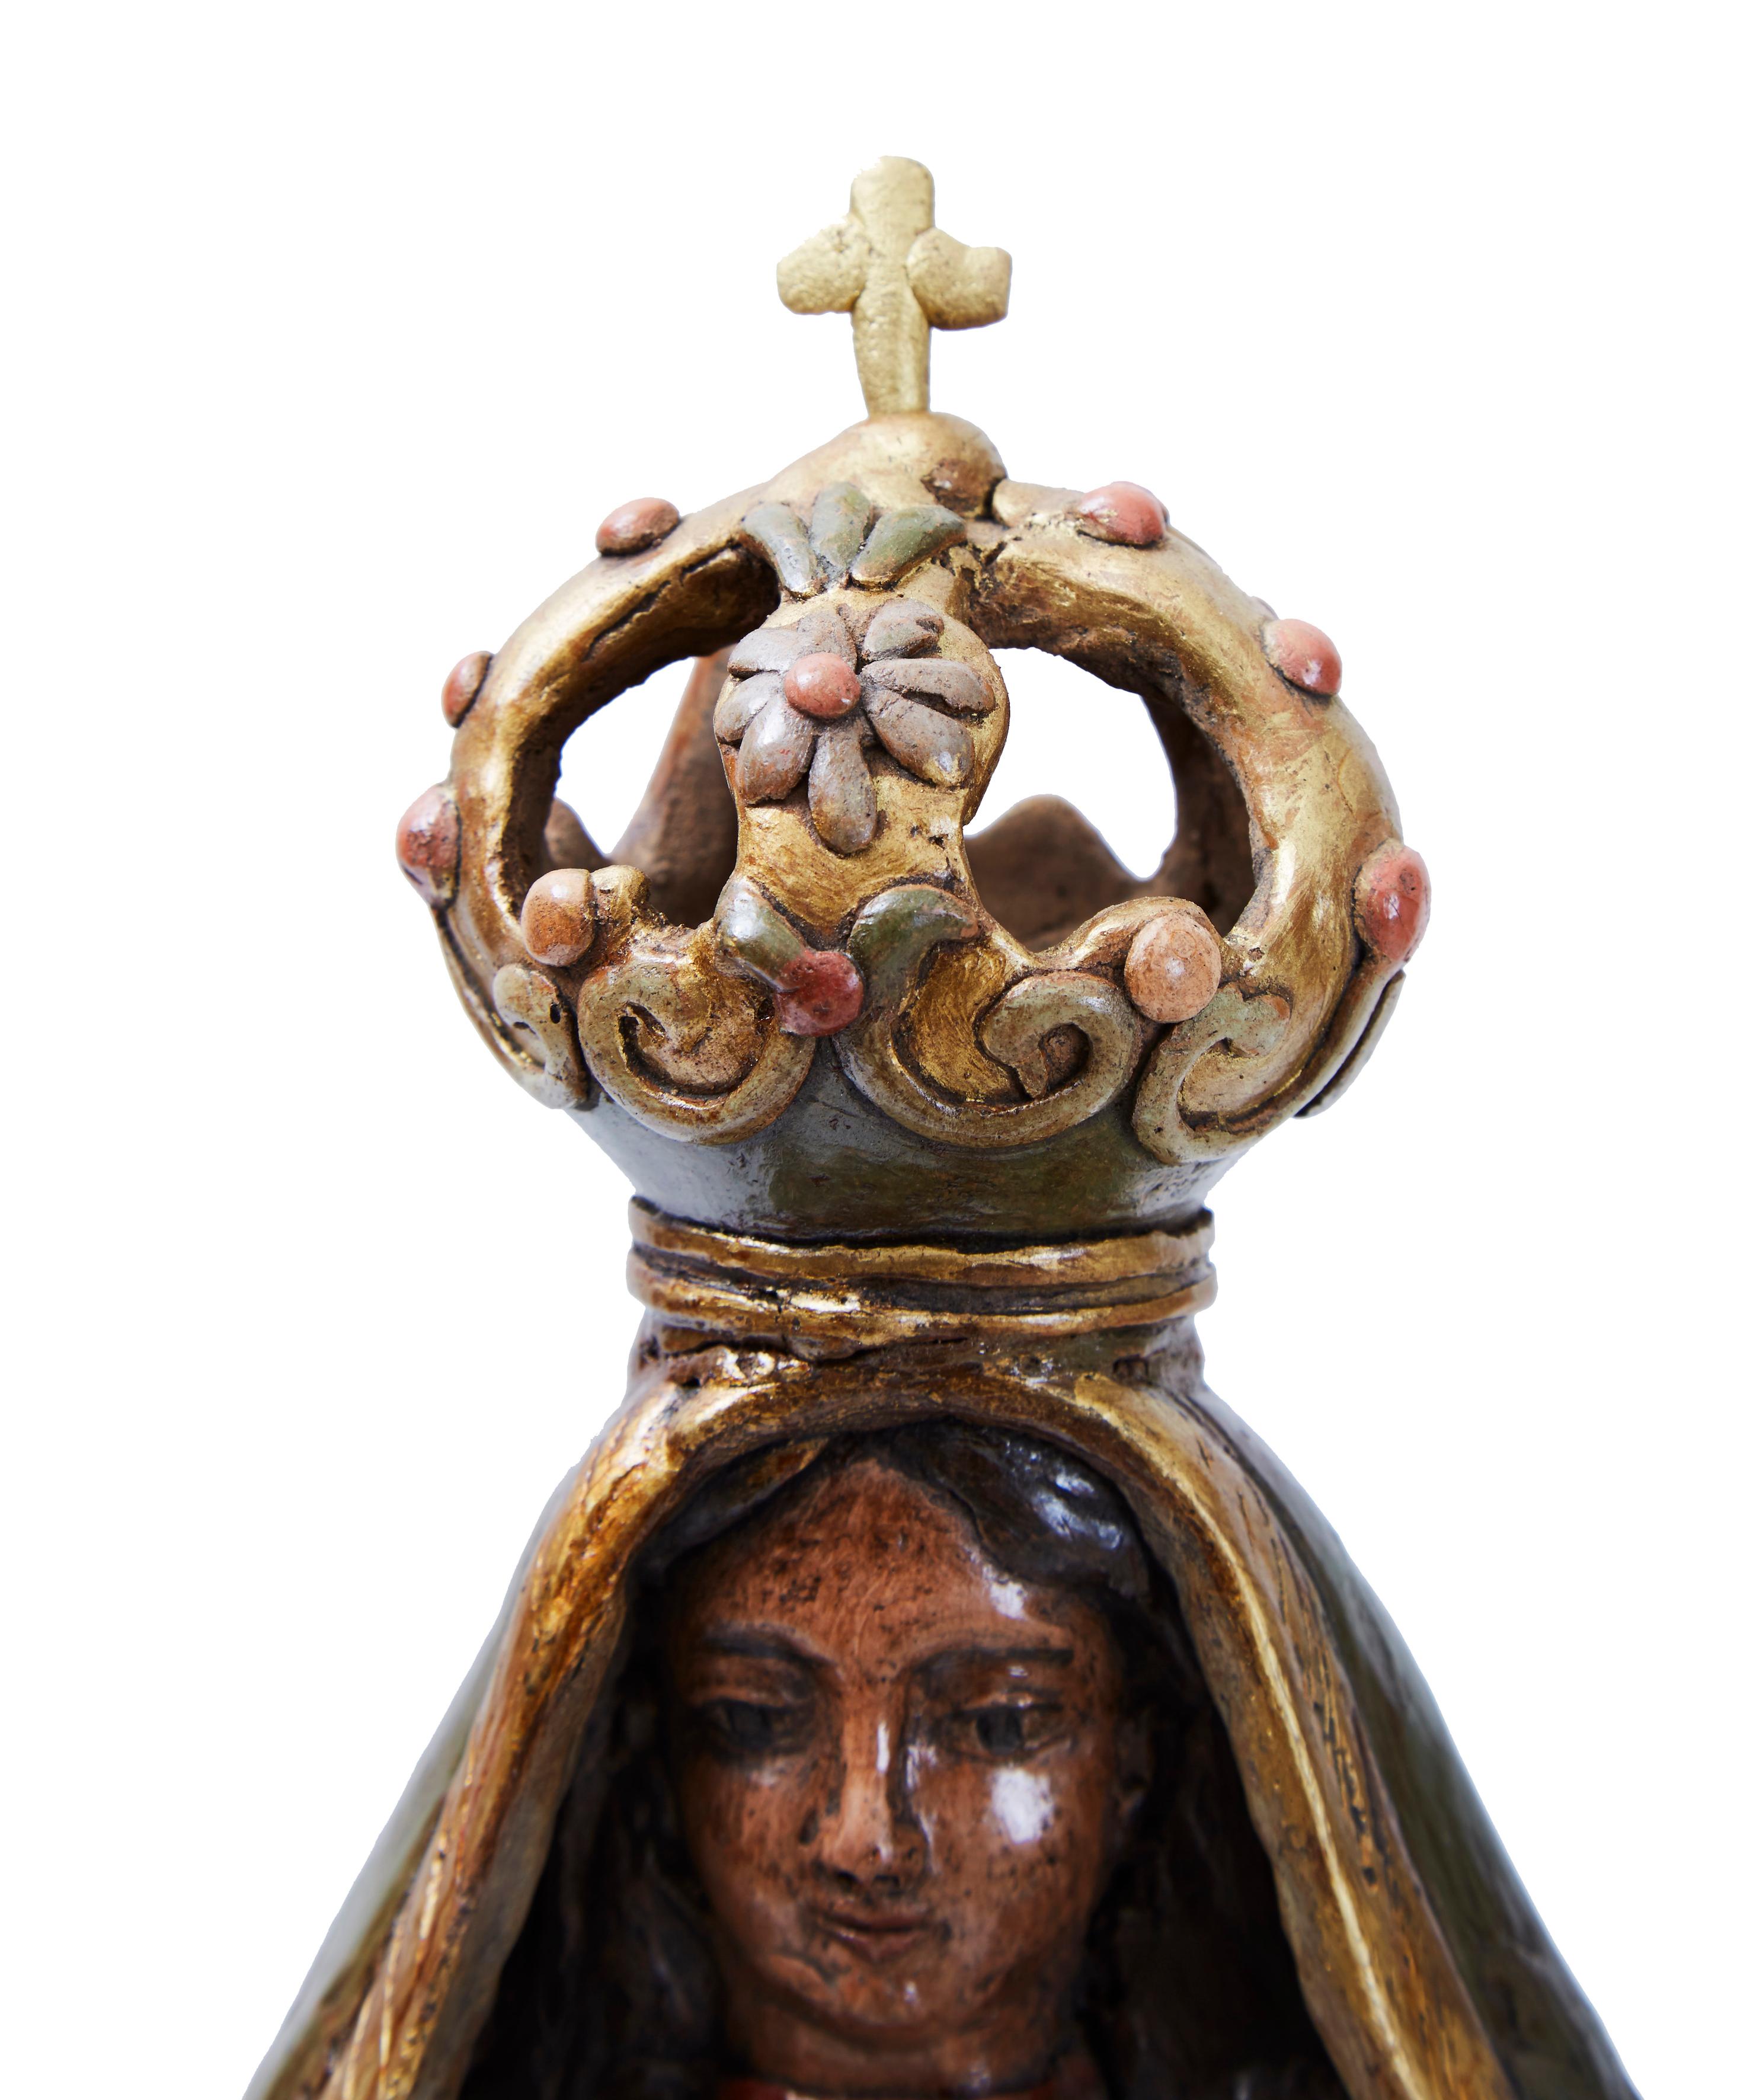 La Virgen del Carmen, Pottery & Ceramics, Mexican Folk Art, Cactus Fine Art - Brown Figurative Sculpture by Martin Ibarra Morales